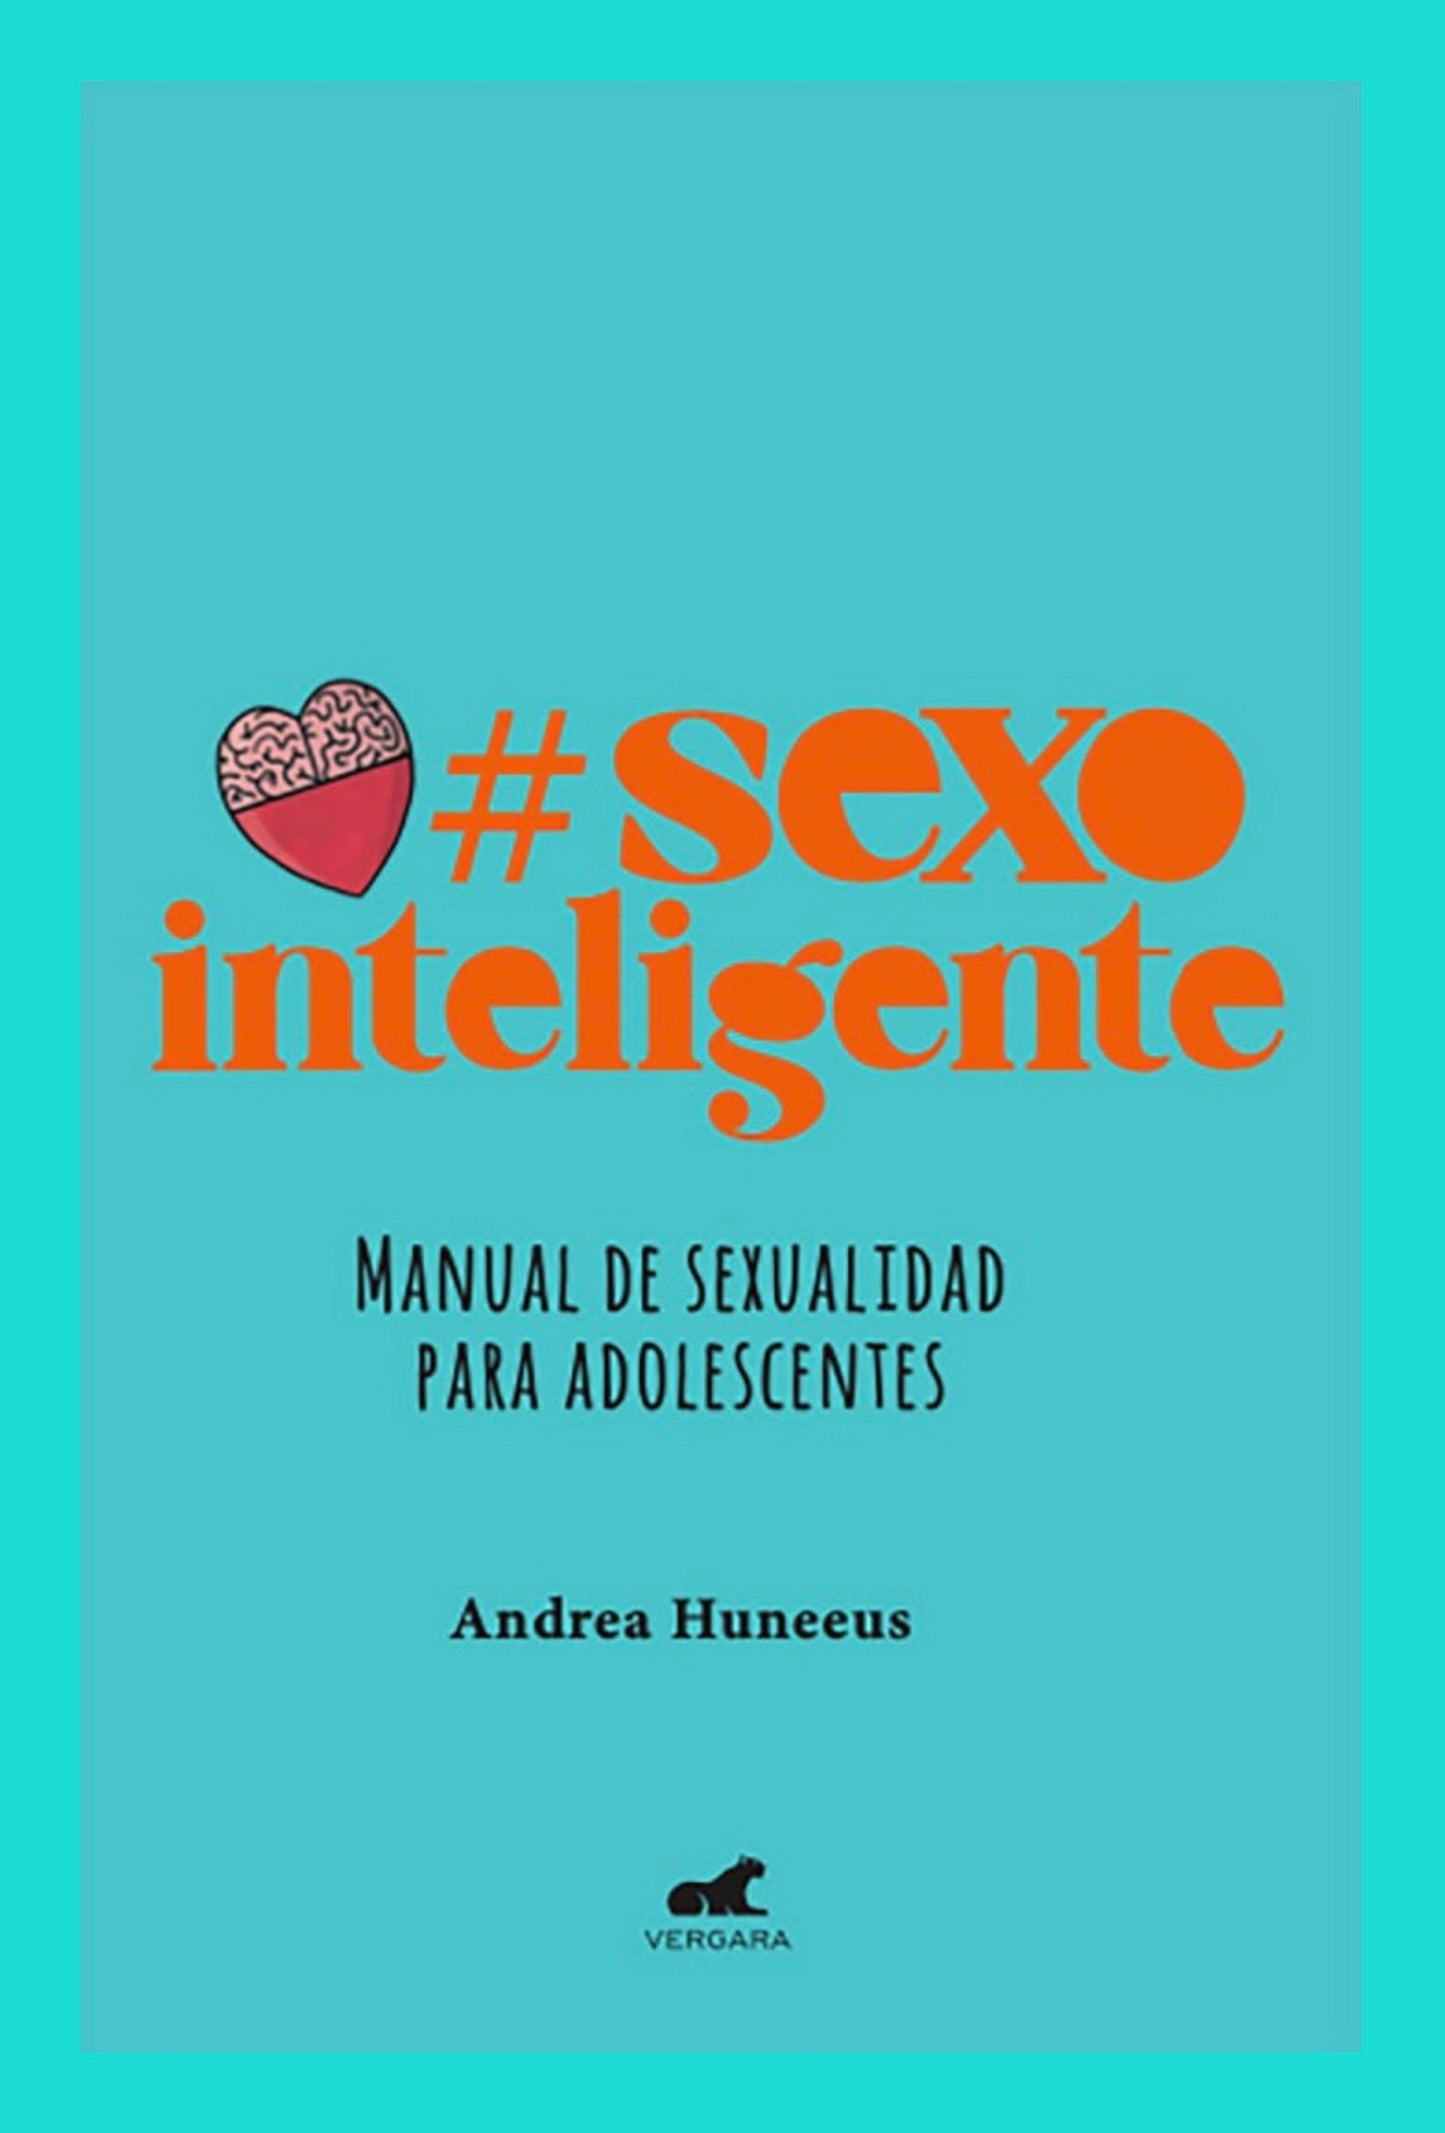 Sexo Inteligente: Manual de Sexualidad para Adolescentes